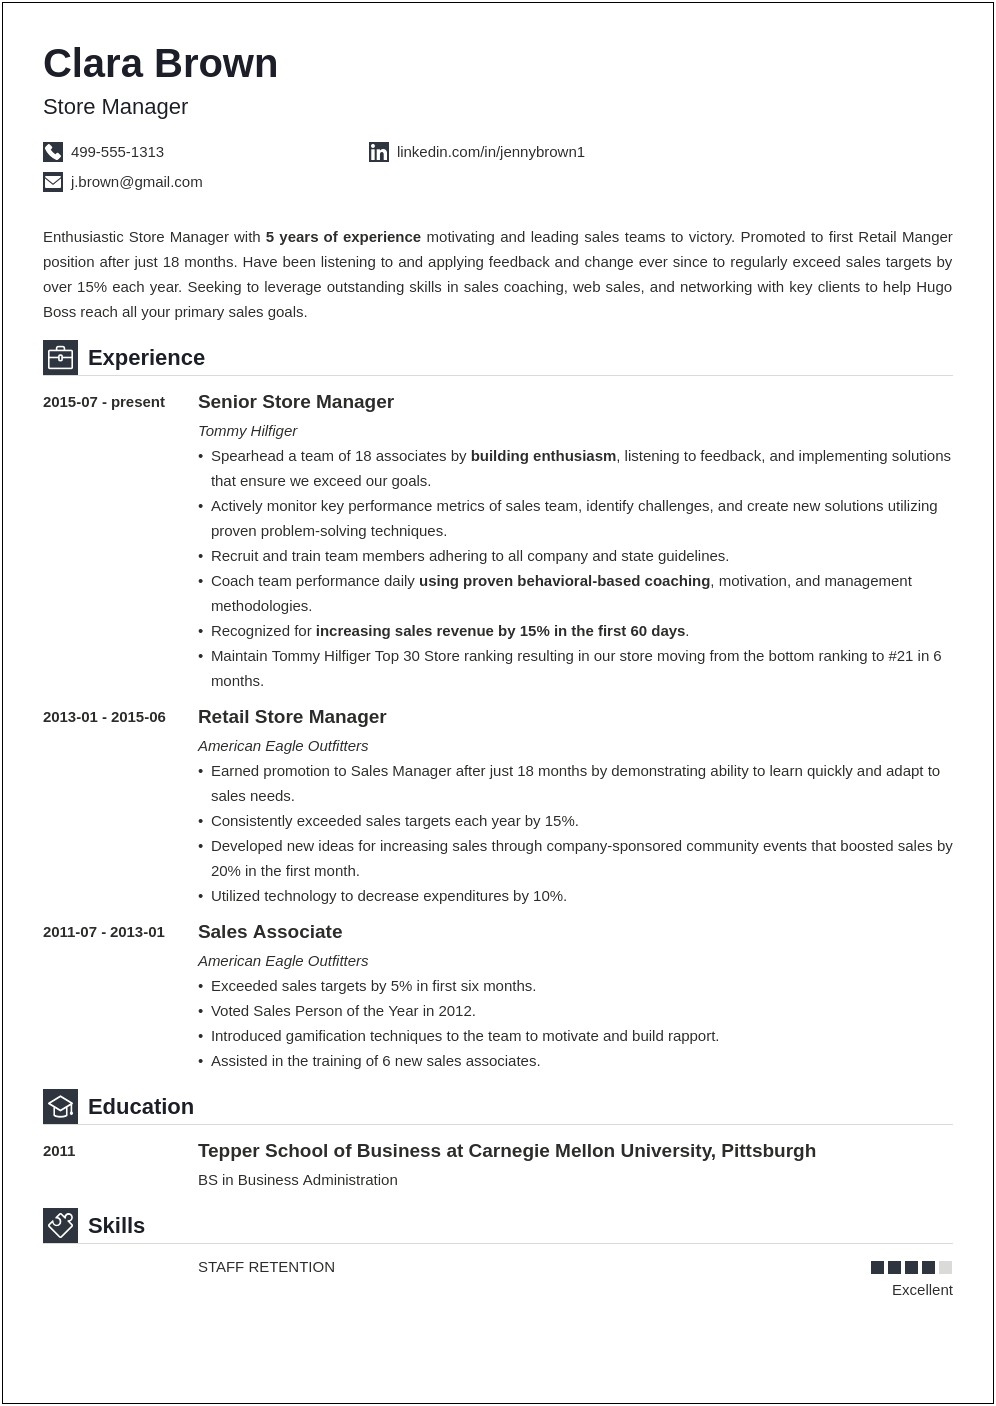 At&t Job Description Resume